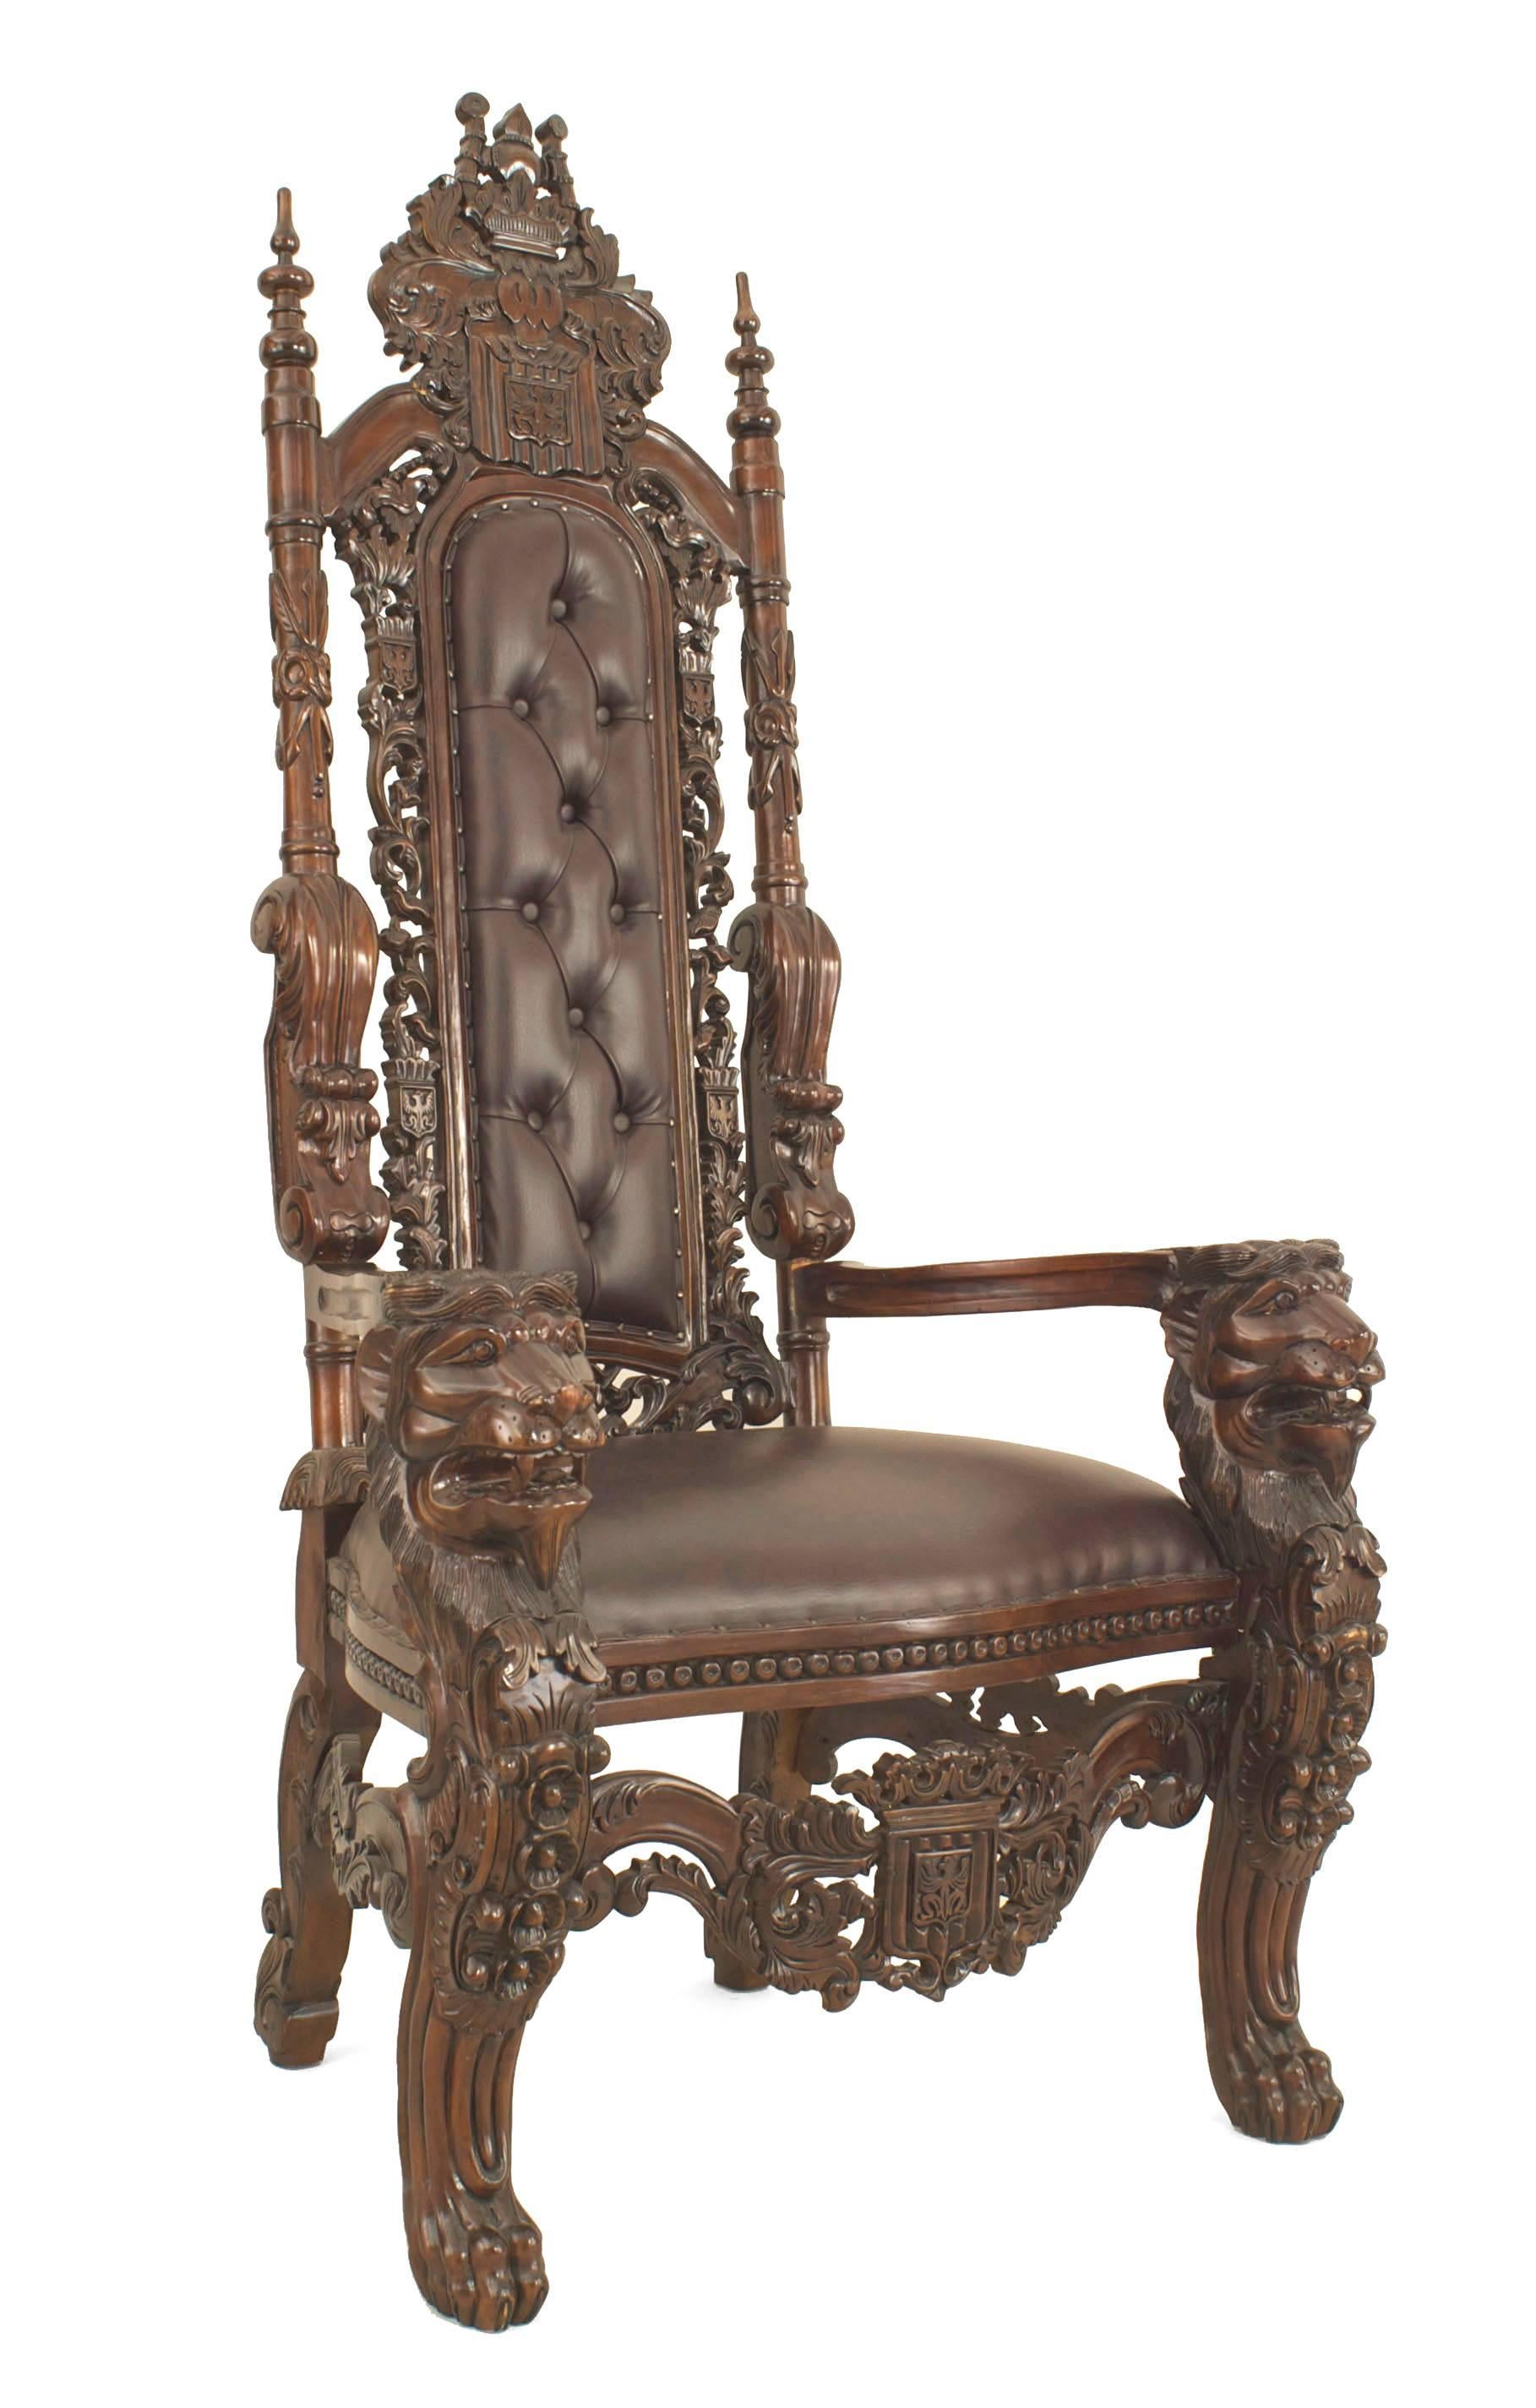 Chaise trône de style Renaissance italienne (20e siècle) en acajou avec des bras de lion sculptés et un haut dossier sculpté avec un dossier et un siège en cuir brun touffeté (similaire à Inv. CON076)
